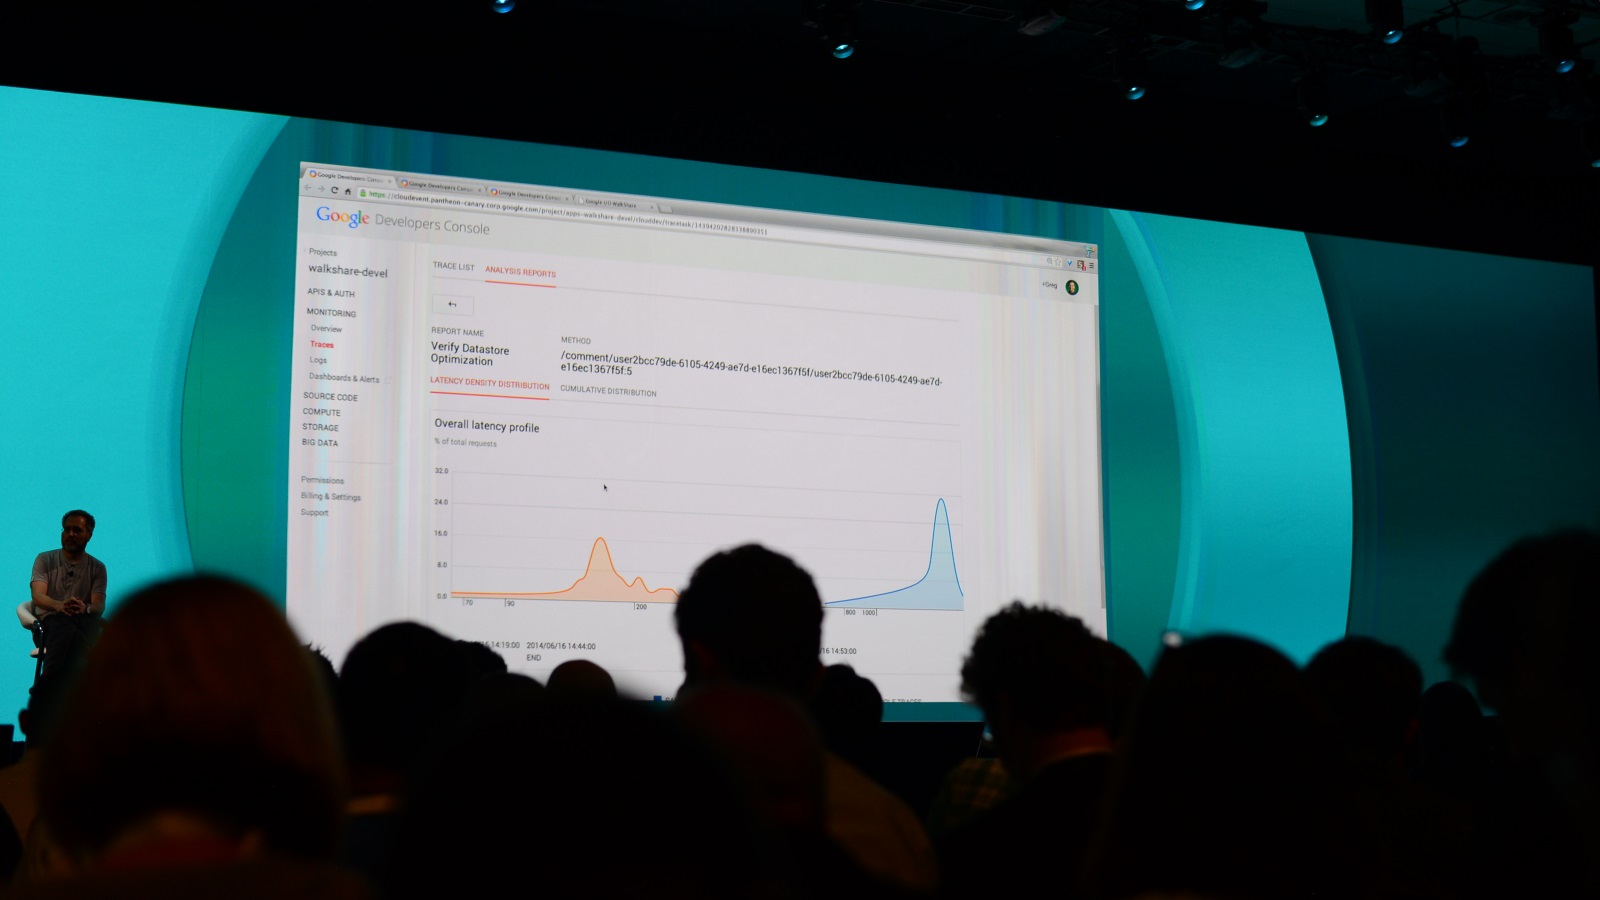 Google Cloud Monitoring Introduced at Google I/O